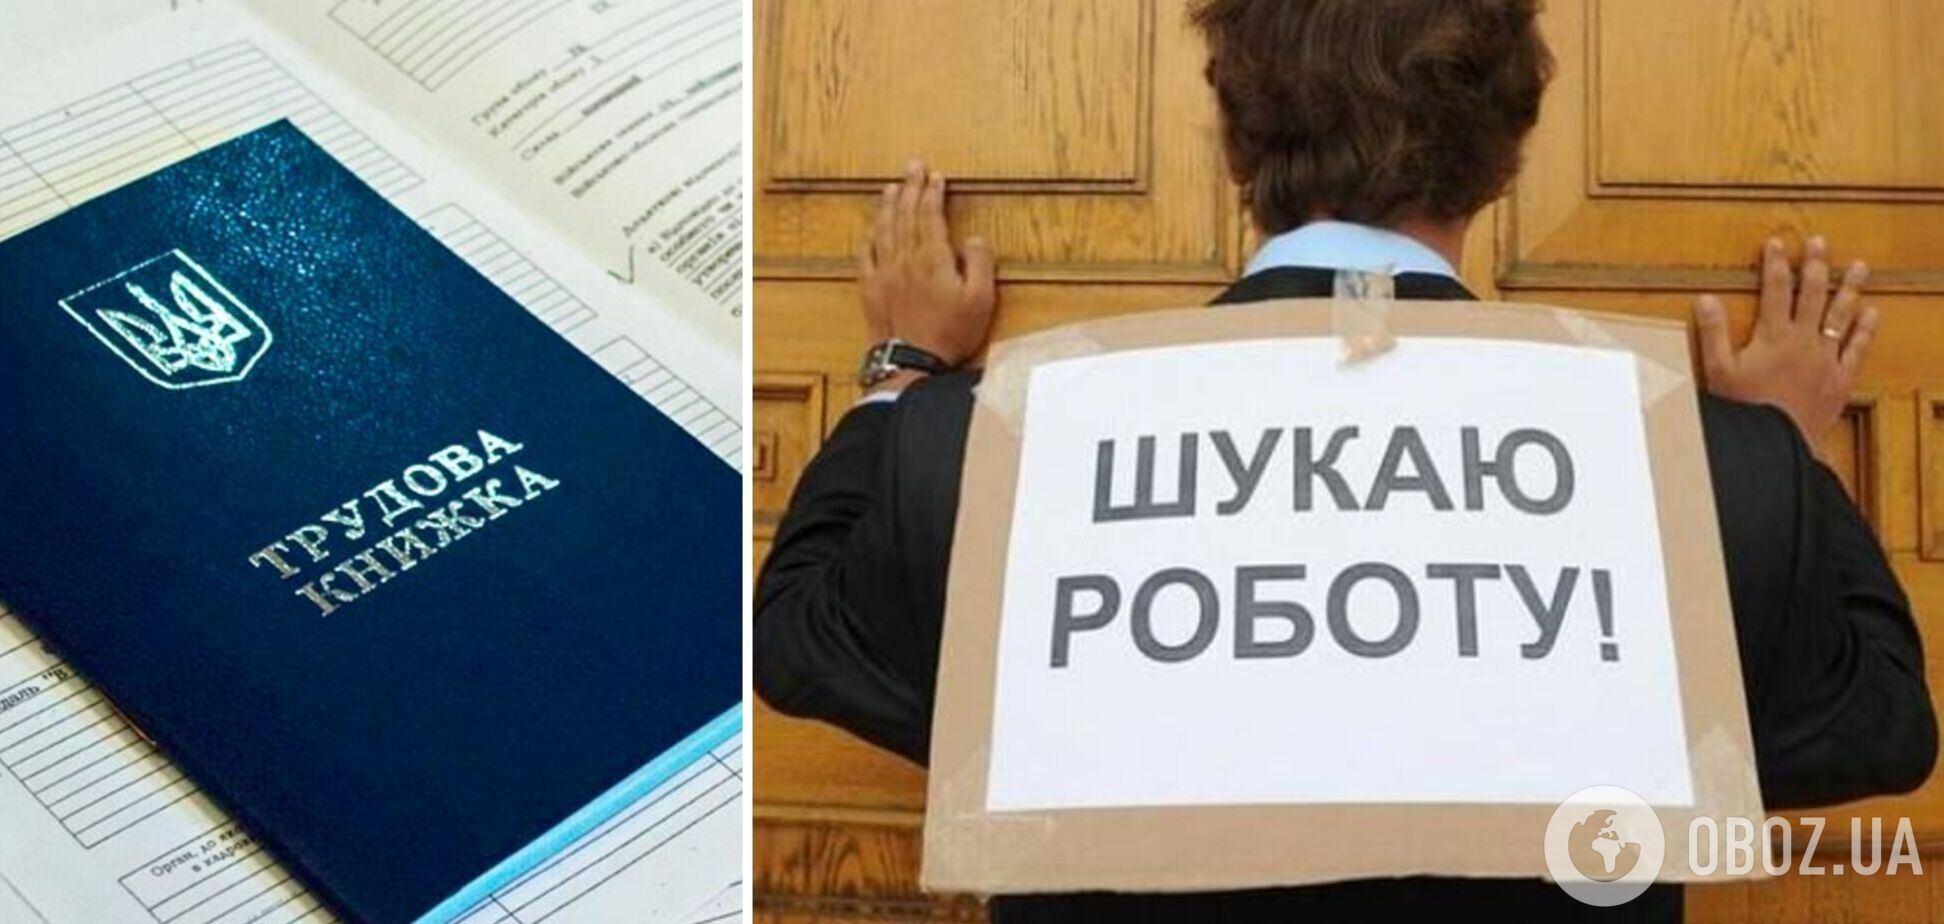 Работодатели не могут найти людей даже на хорошие зарплаты, однако уровень безработицы в Украине высокий